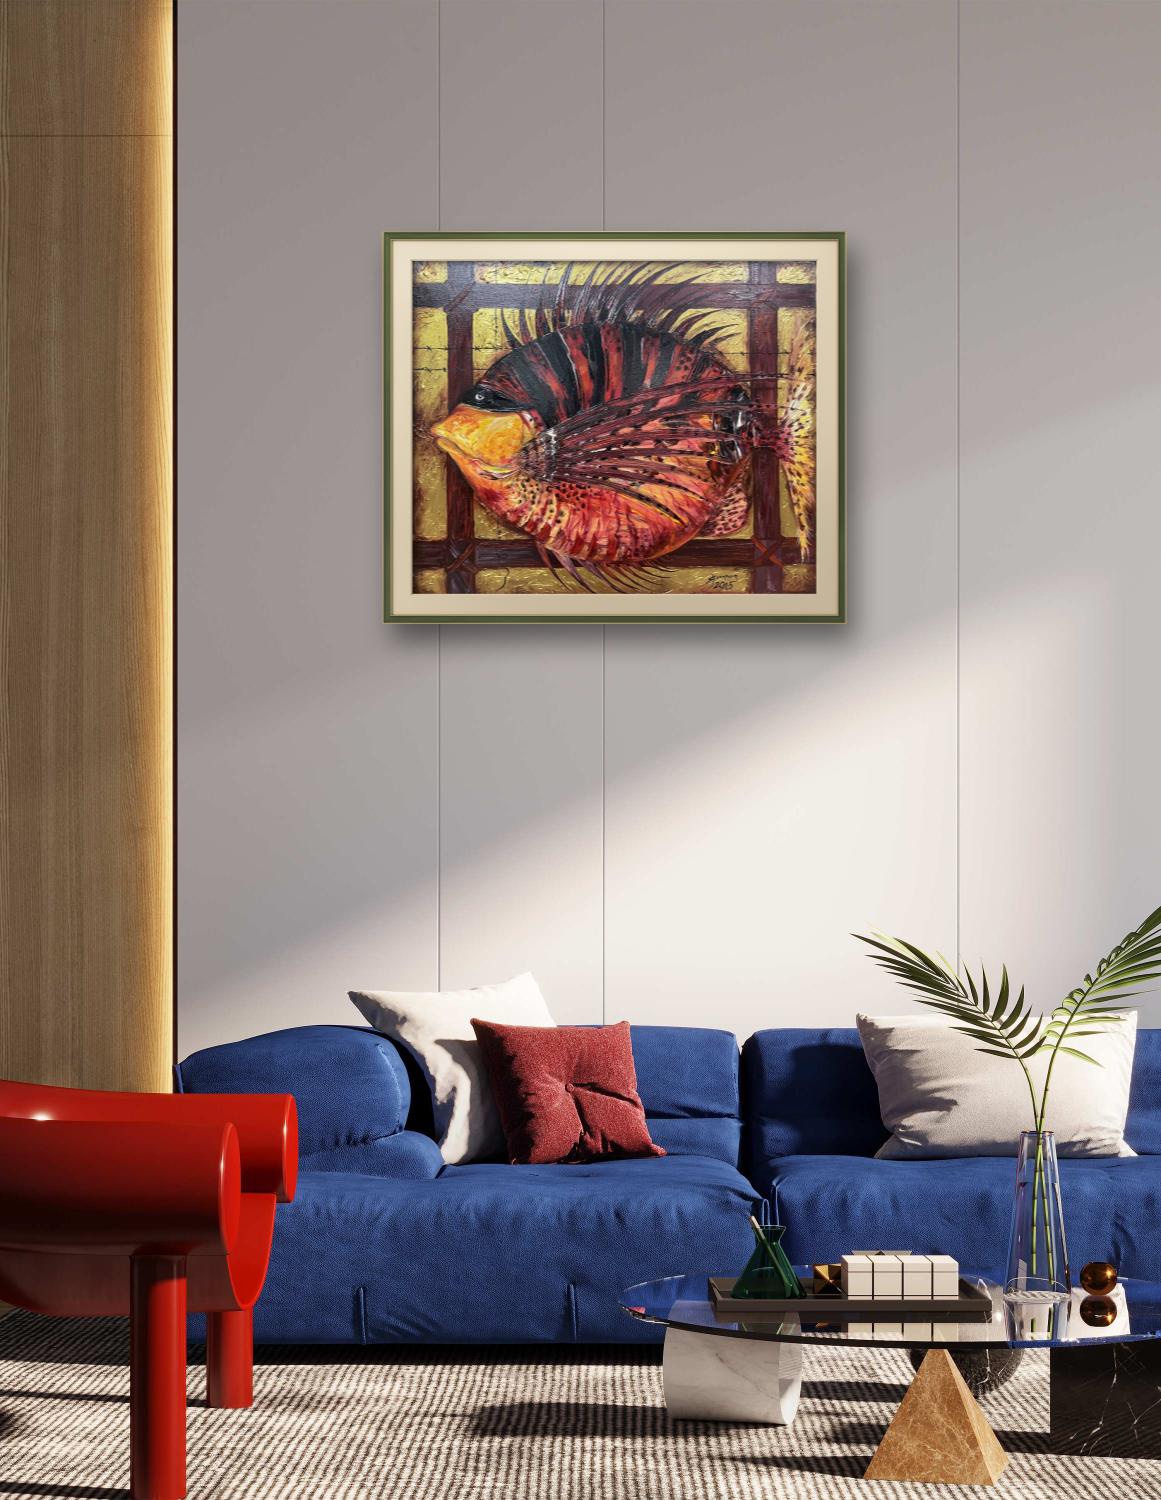 俄罗斯大师加加琳娜纯手绘风景油画现代古典装饰卧室客厅玄关挂画